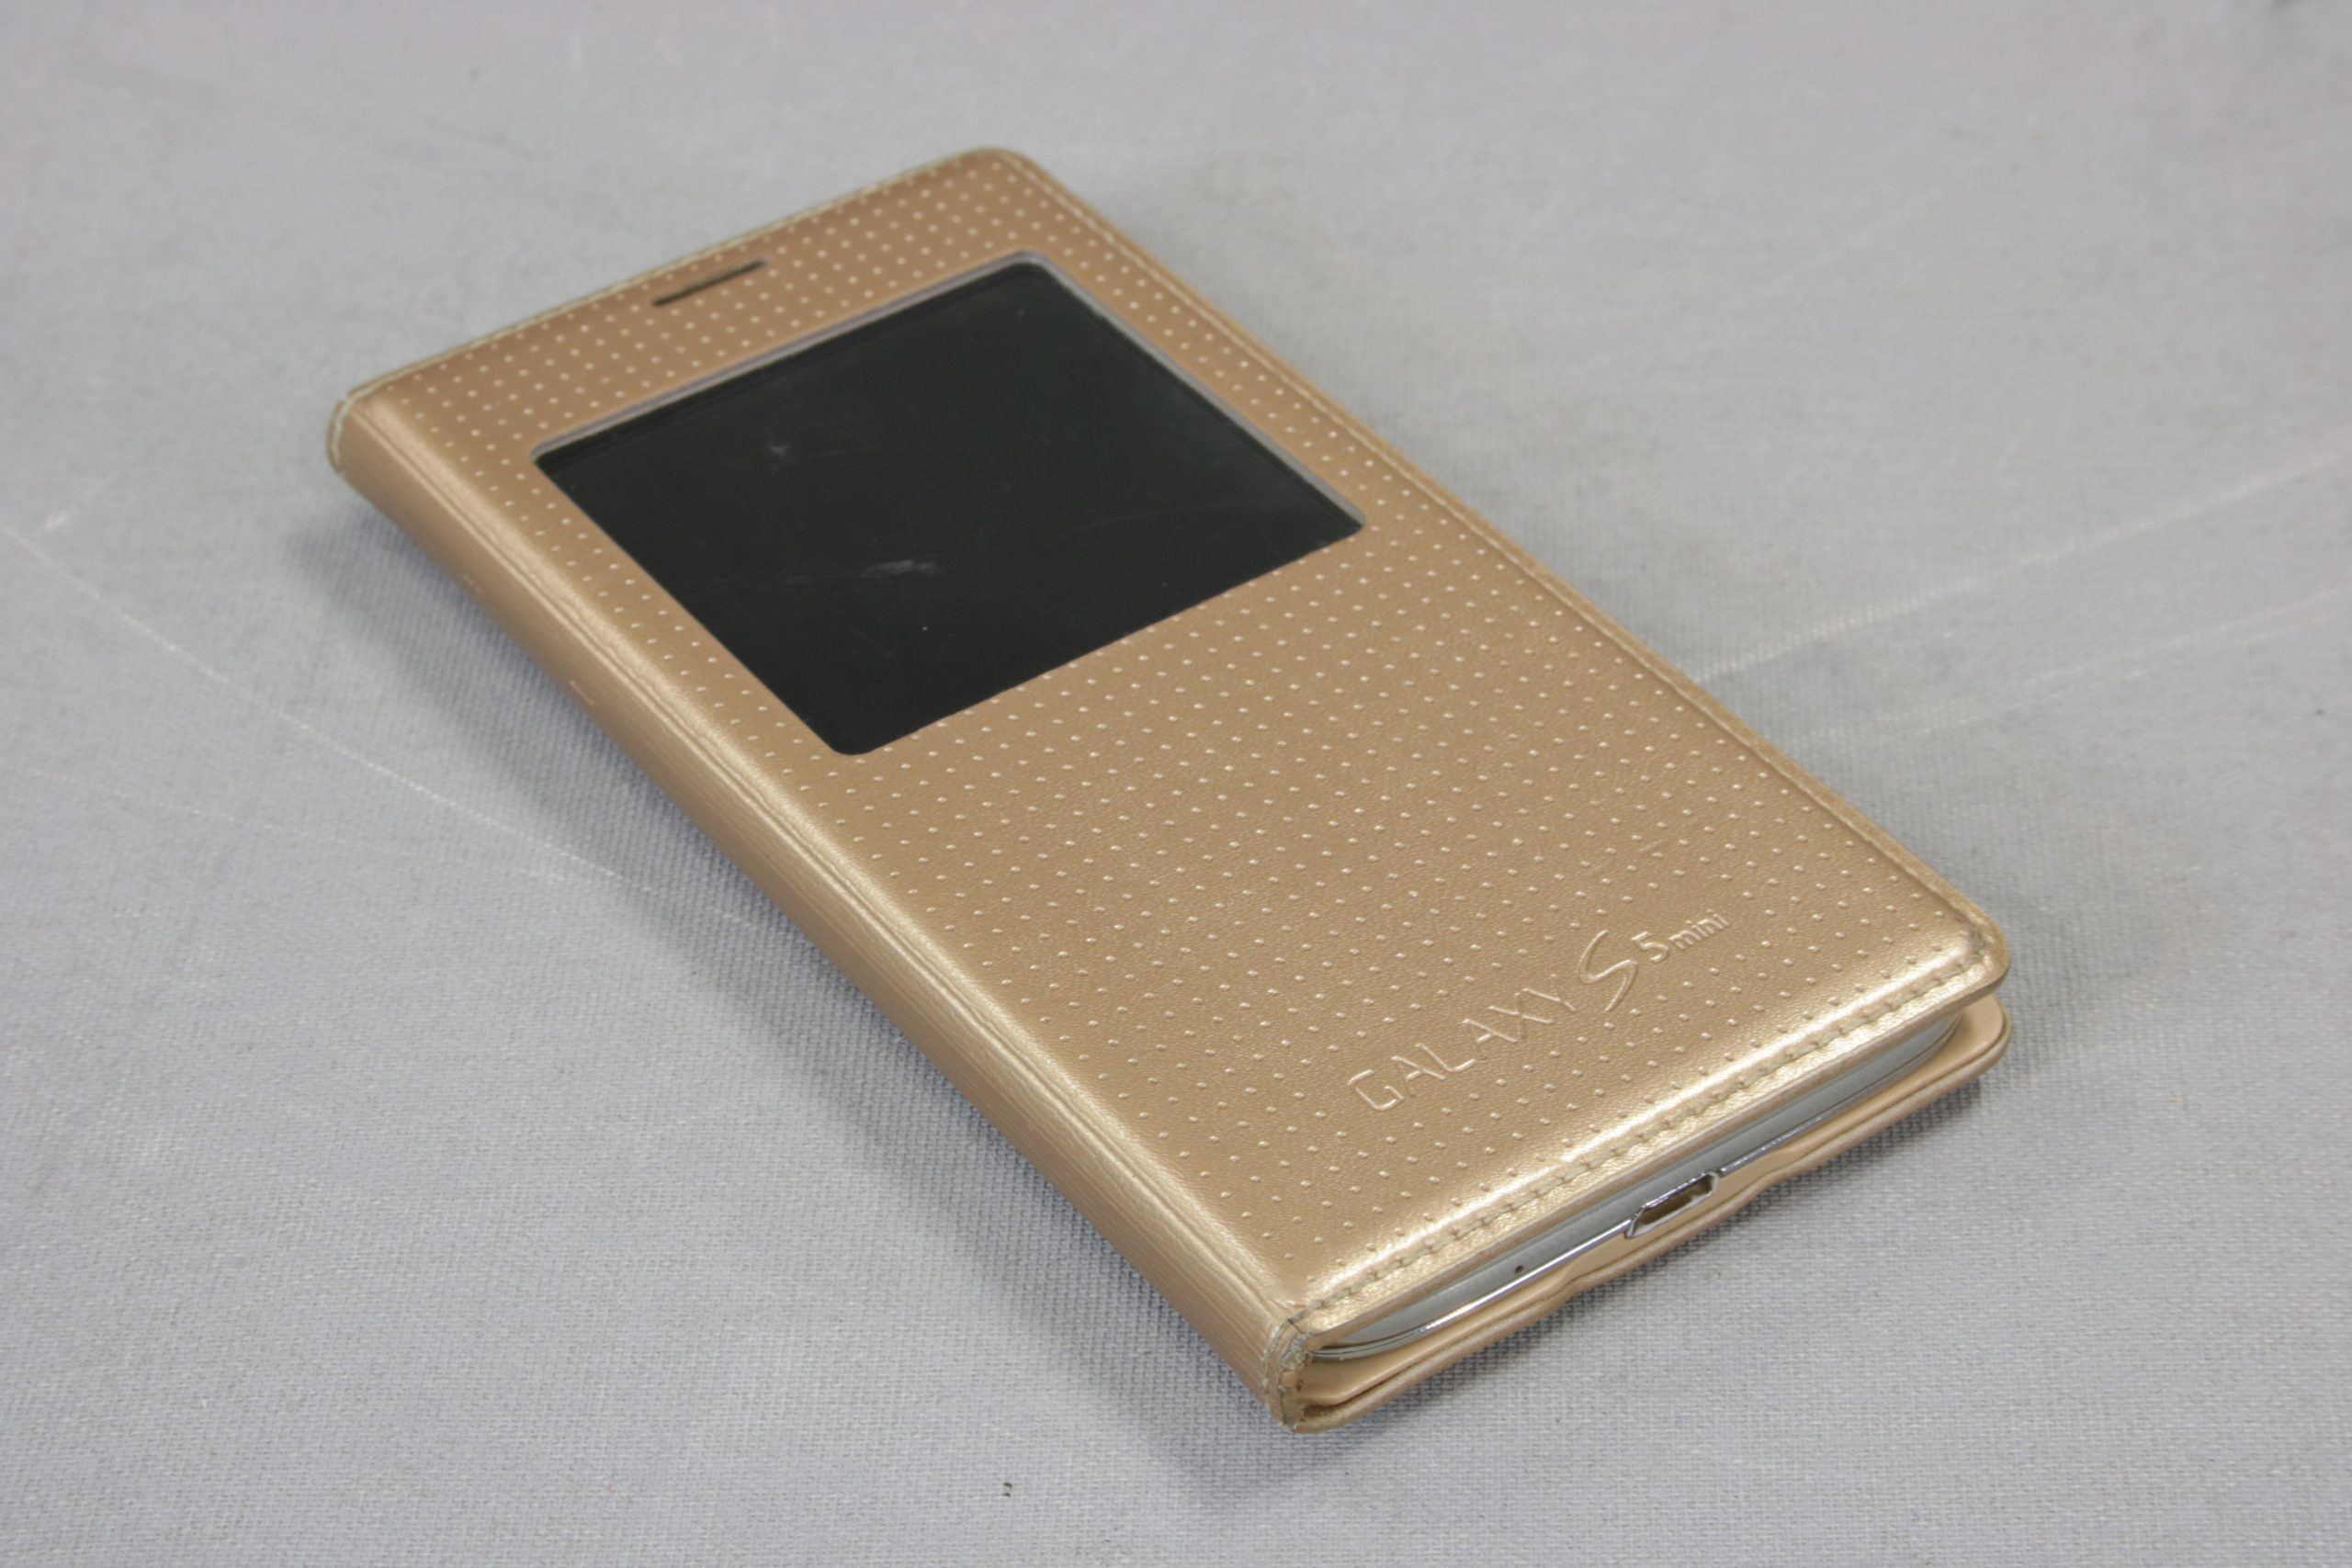 Samsung Galaxy S5 Mini LTE SM-G800F 16GB olåst och nollställd